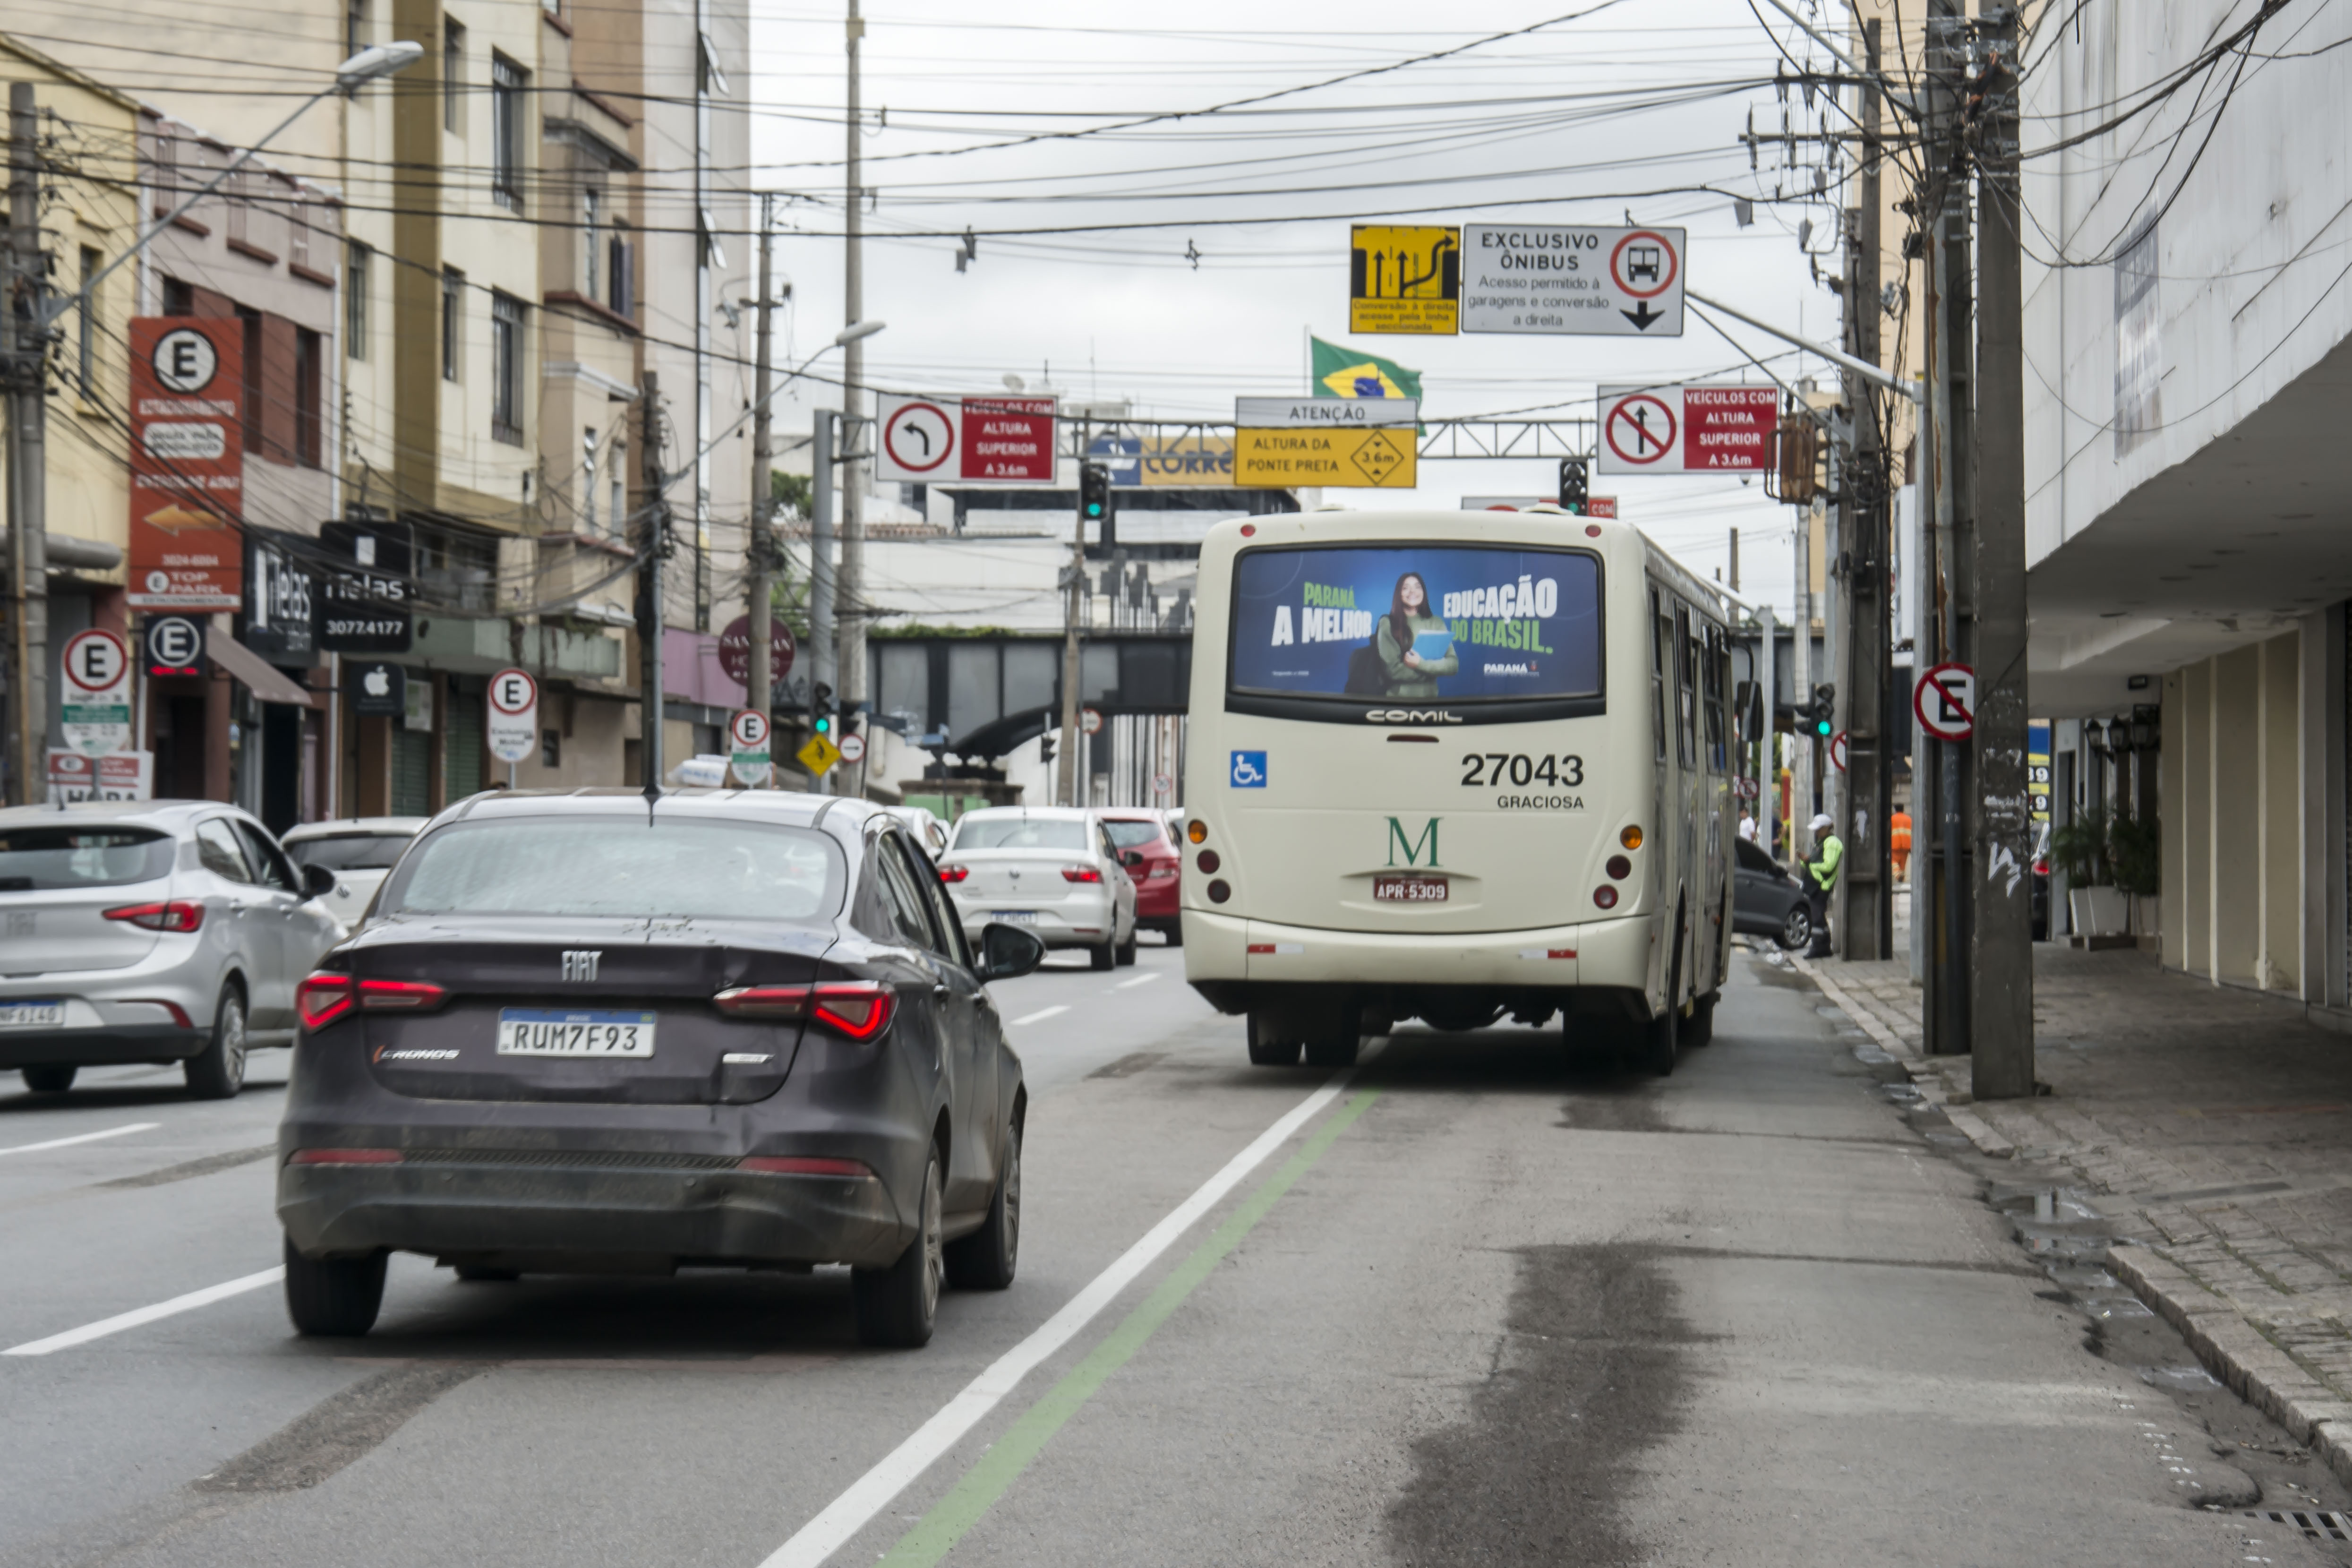 Avenidas de Guarujá, SP, têm novas regras de estacionamento